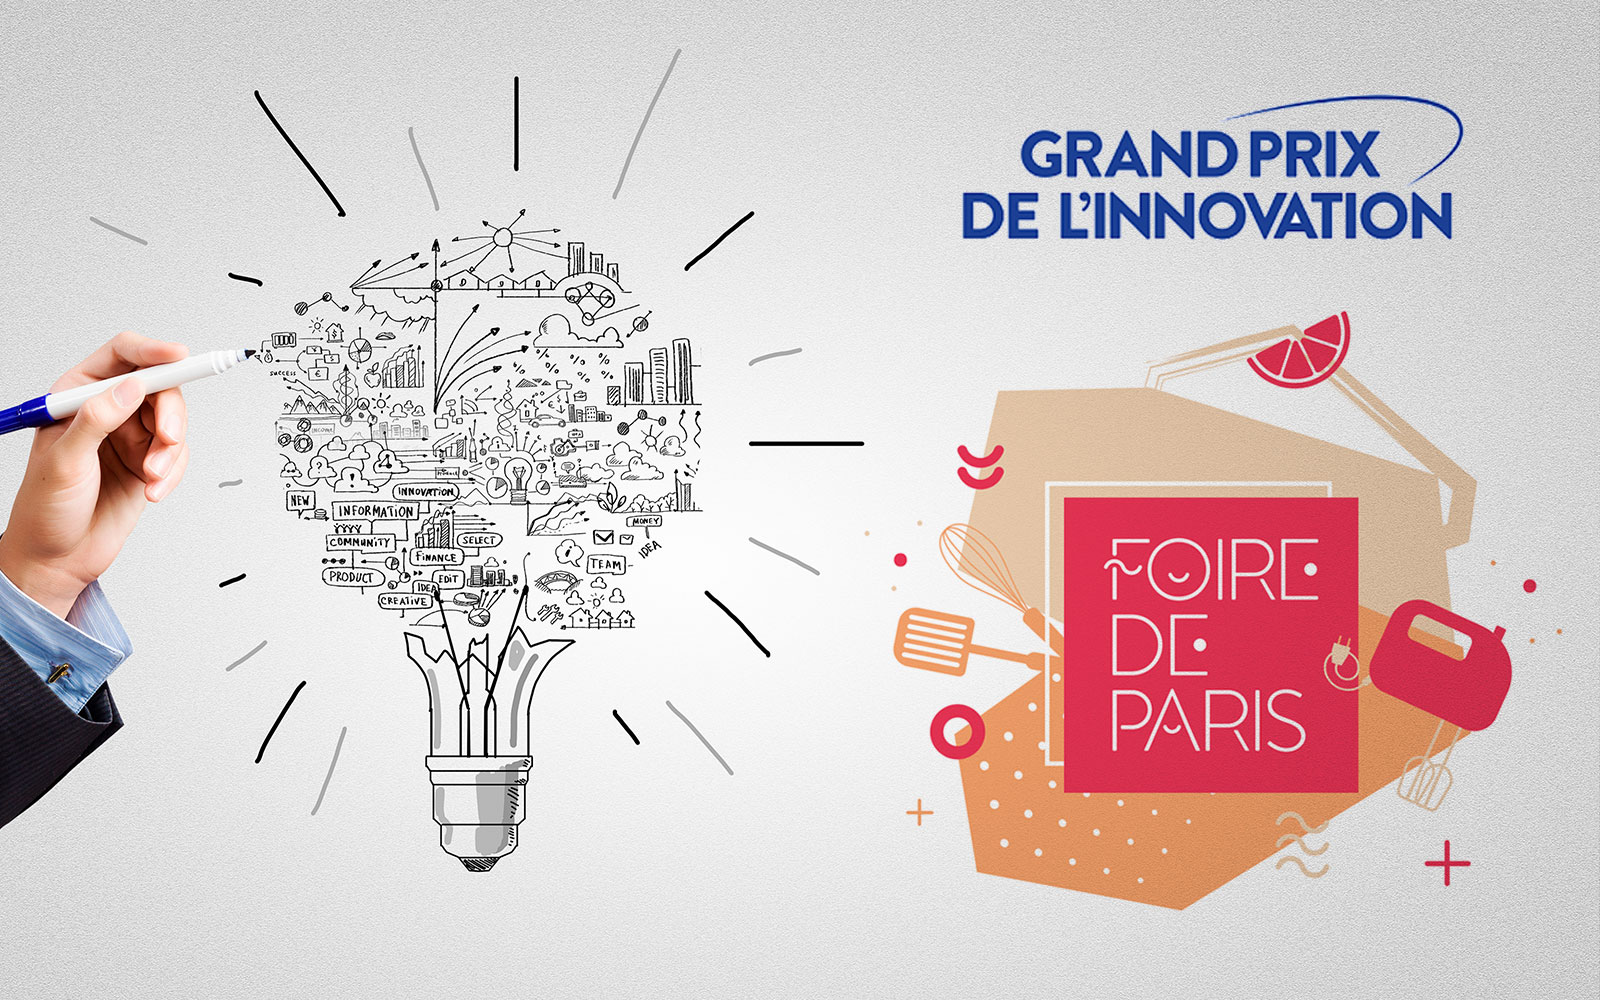 Foire de paris : les Gagnants du Grand Prix de l'Innovation